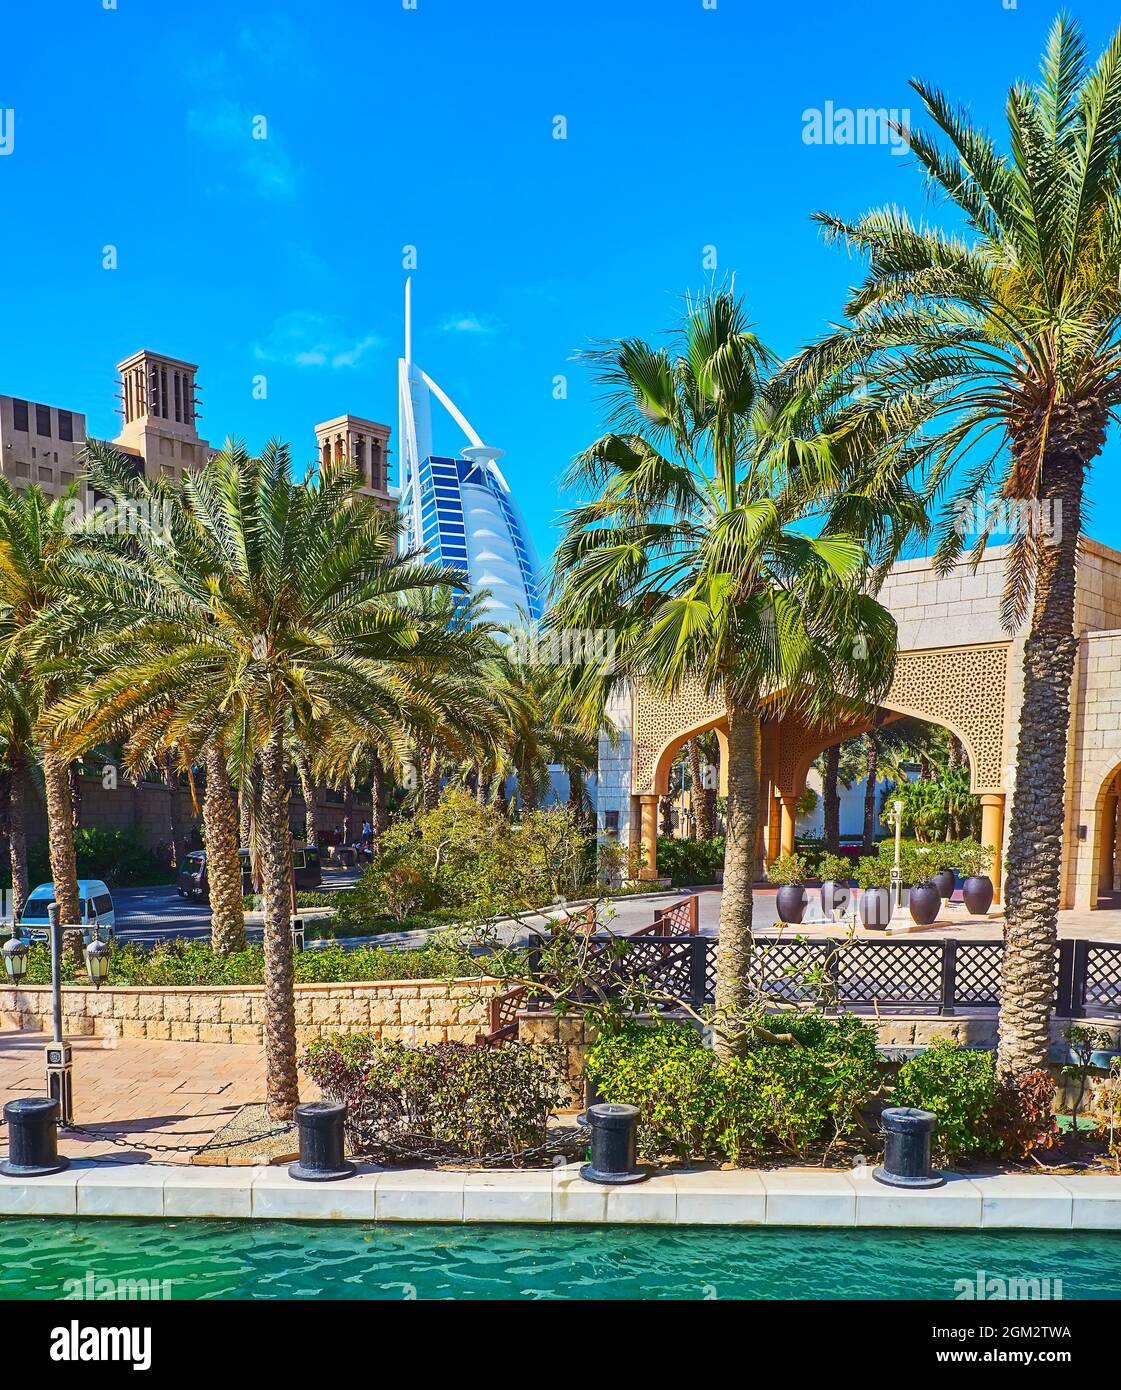 Die üppigen Palmen am Kanalufer des Souk Madinat Jumeirah-Marktes mit Blick auf Burj al Arab im Hintergrund, Dubai, VAE Stockfoto